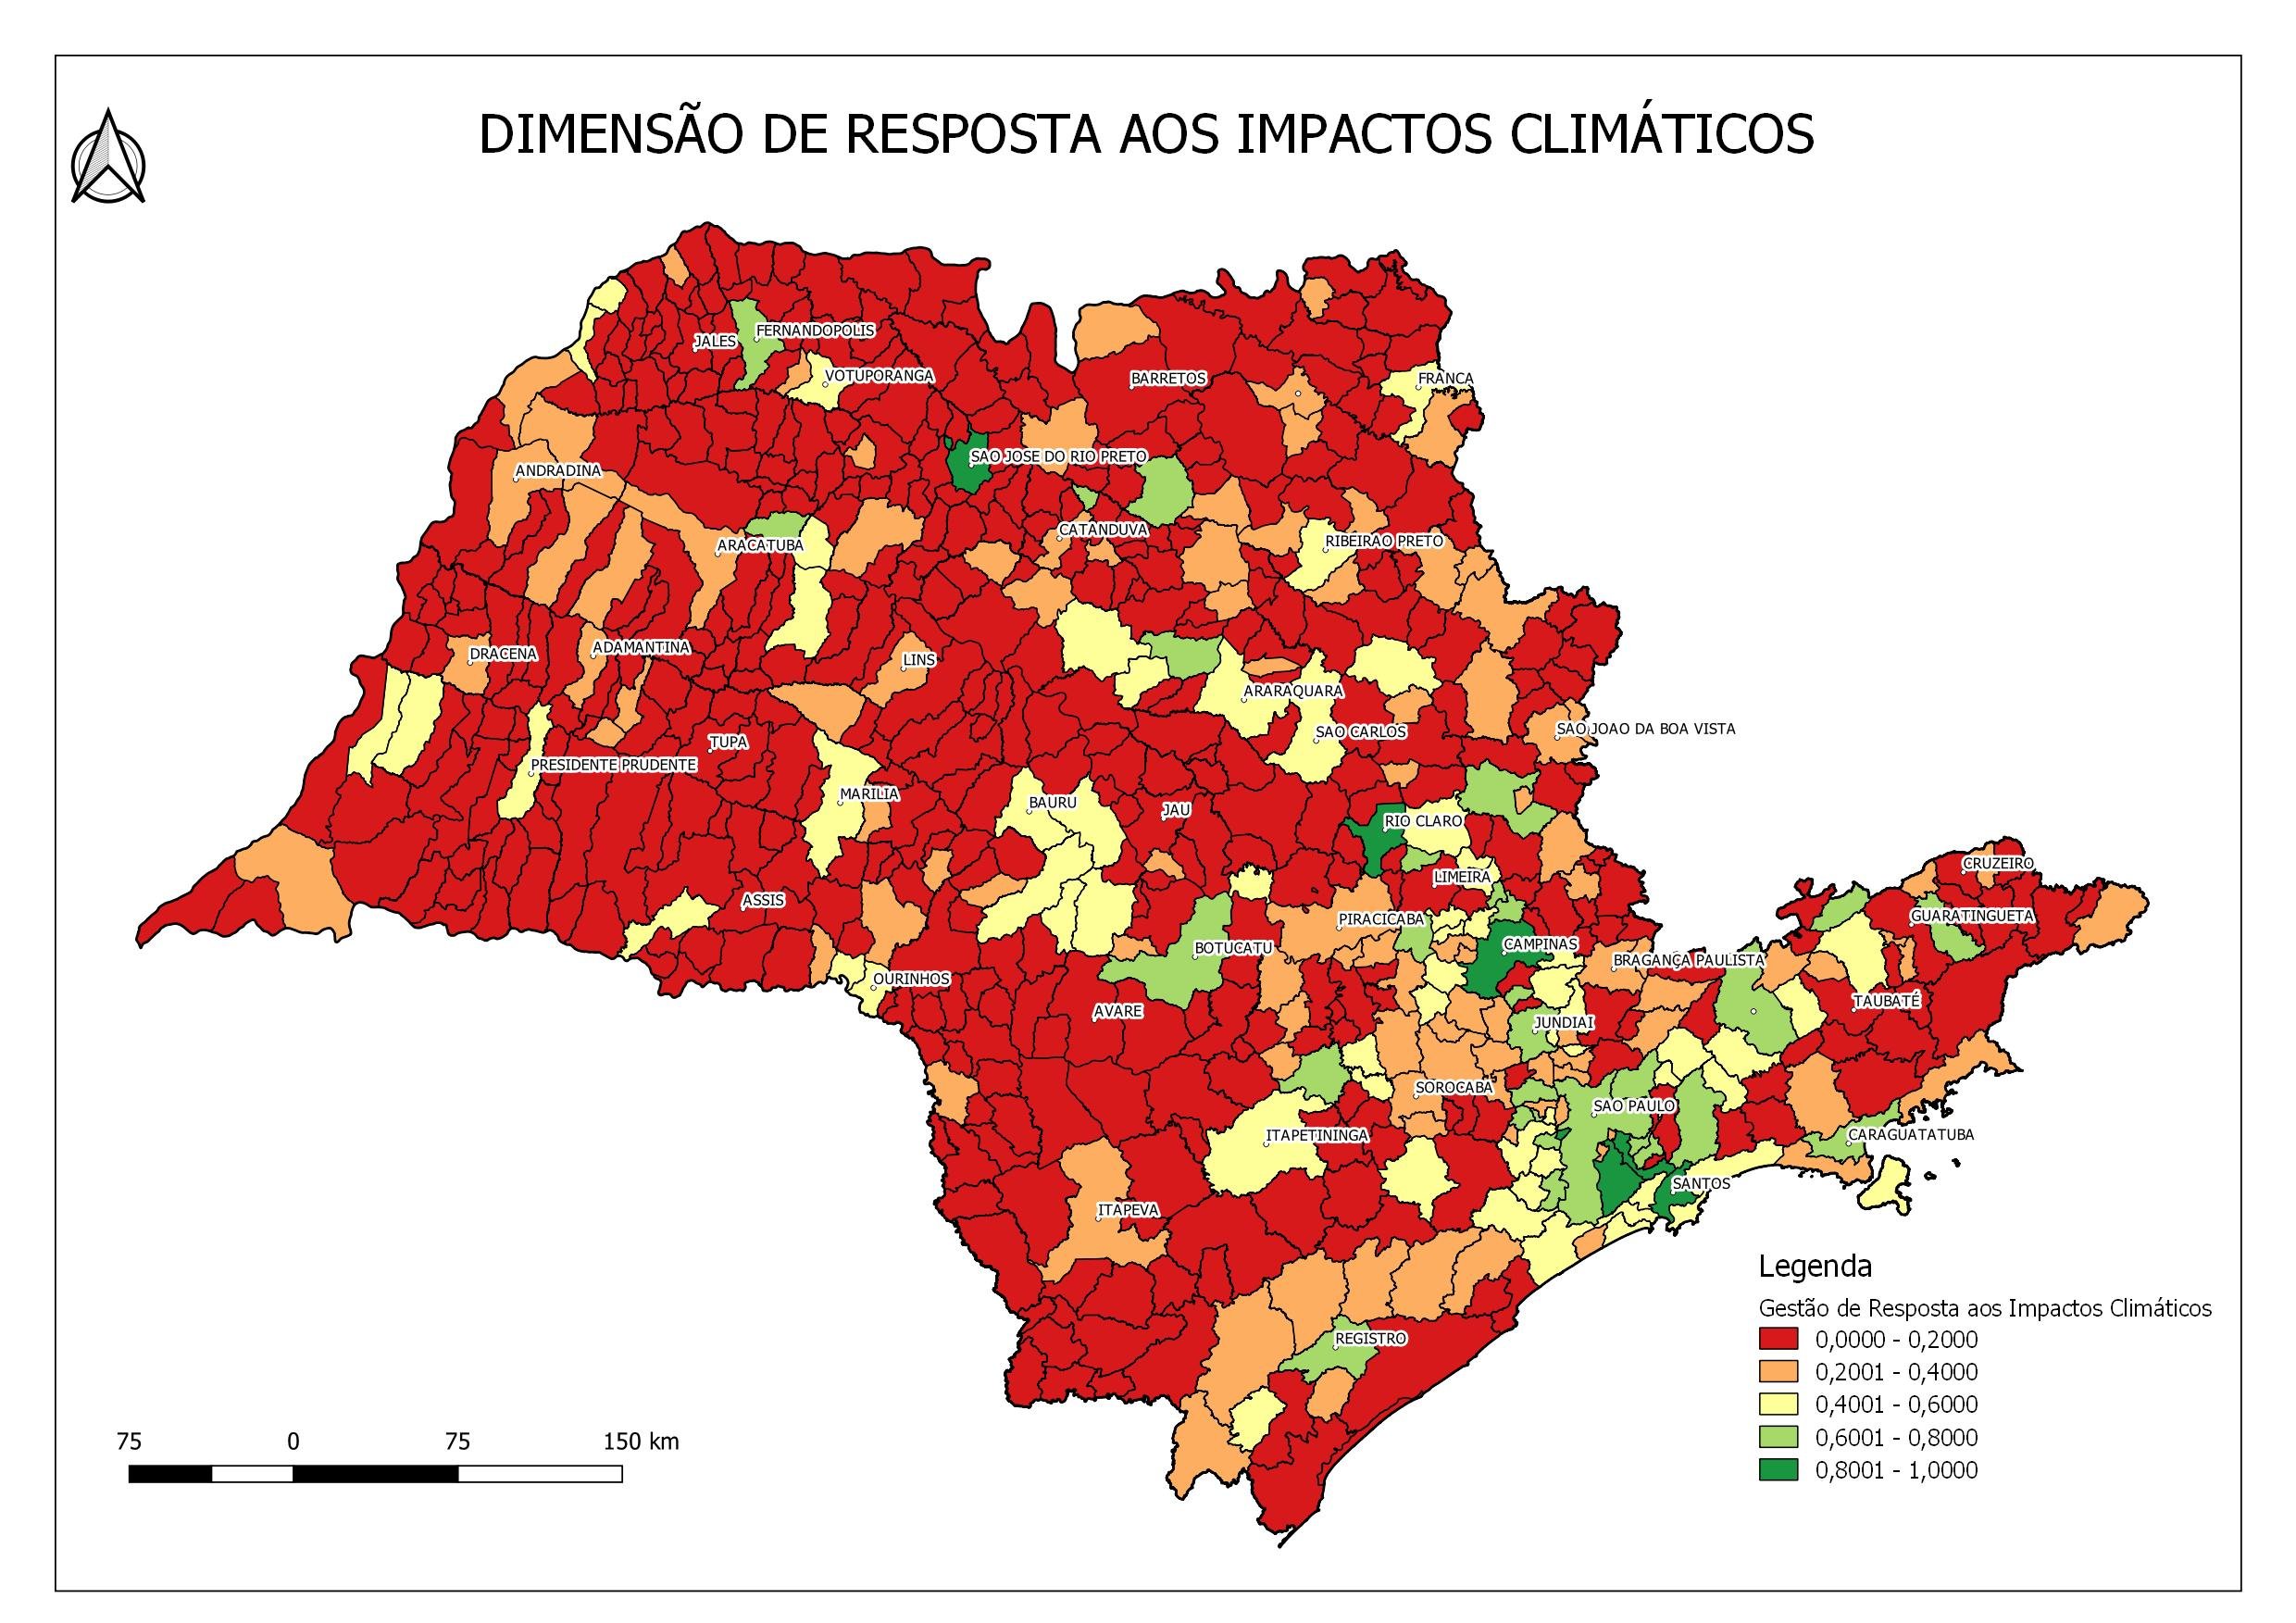 Mapa mostra dimensão de resposta aos impactos climáticos de cada município paulista. Quanto mais próximo de 1 (verde escuro), melhor é o índice da cidade em relação a esse aspecto.